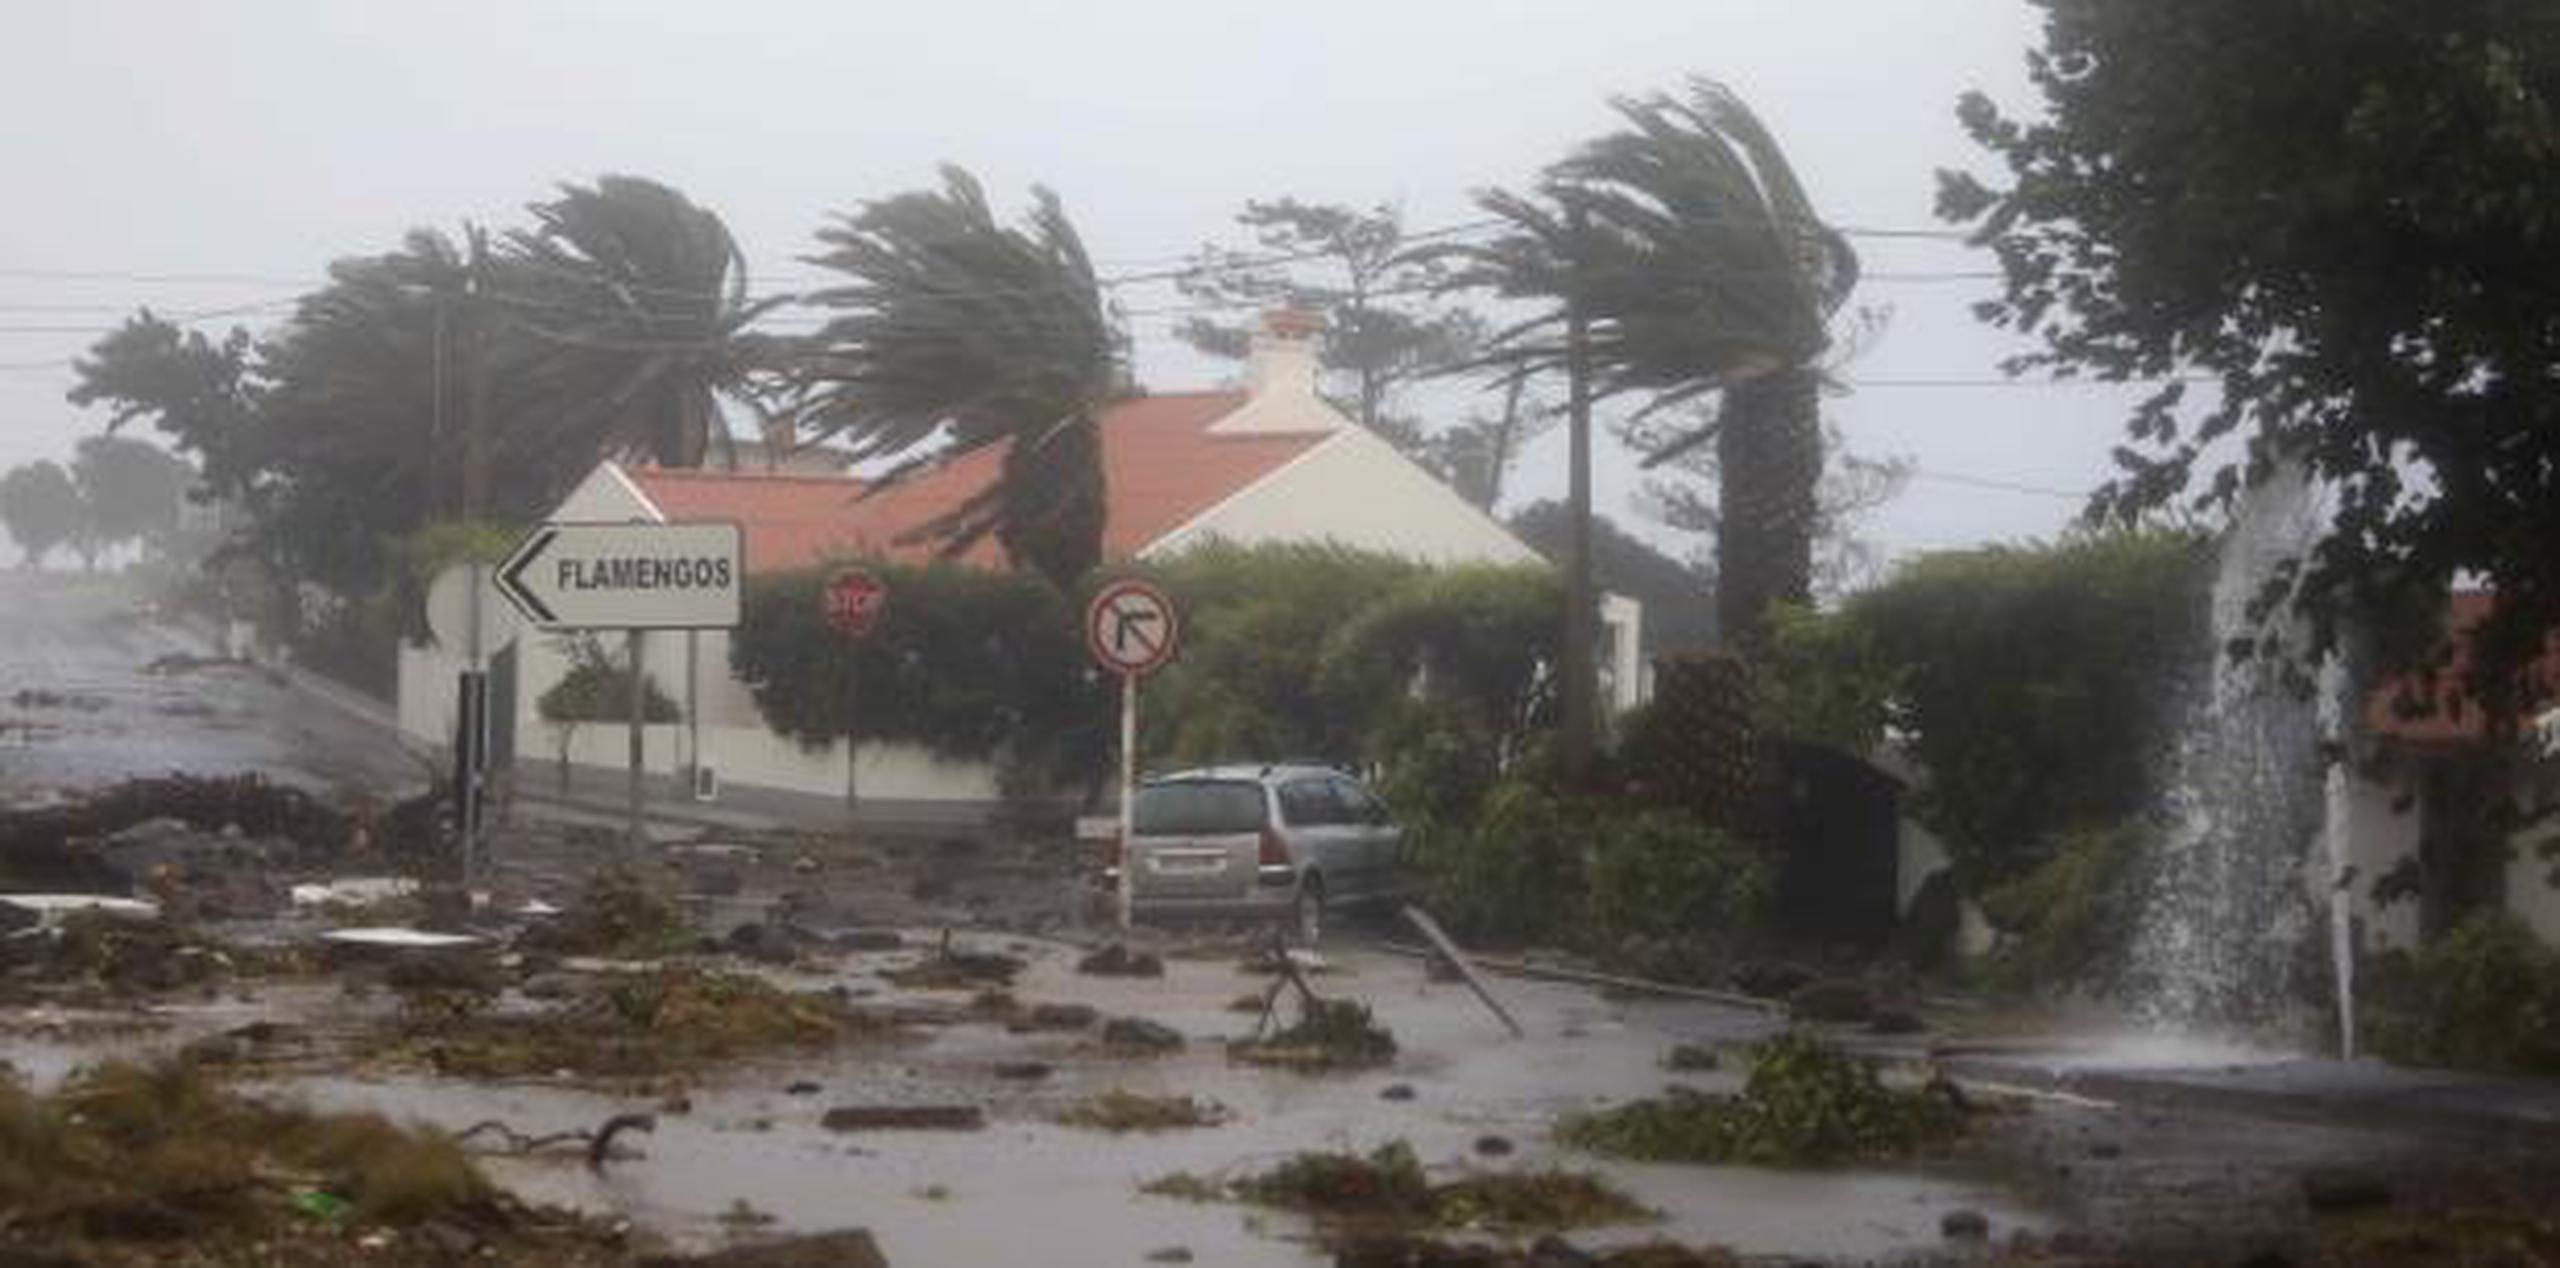 Escombros en una carretera en el pueblo costero de Feteira, en la isla portuguesa de Faial. (AP / Joao Henriques)